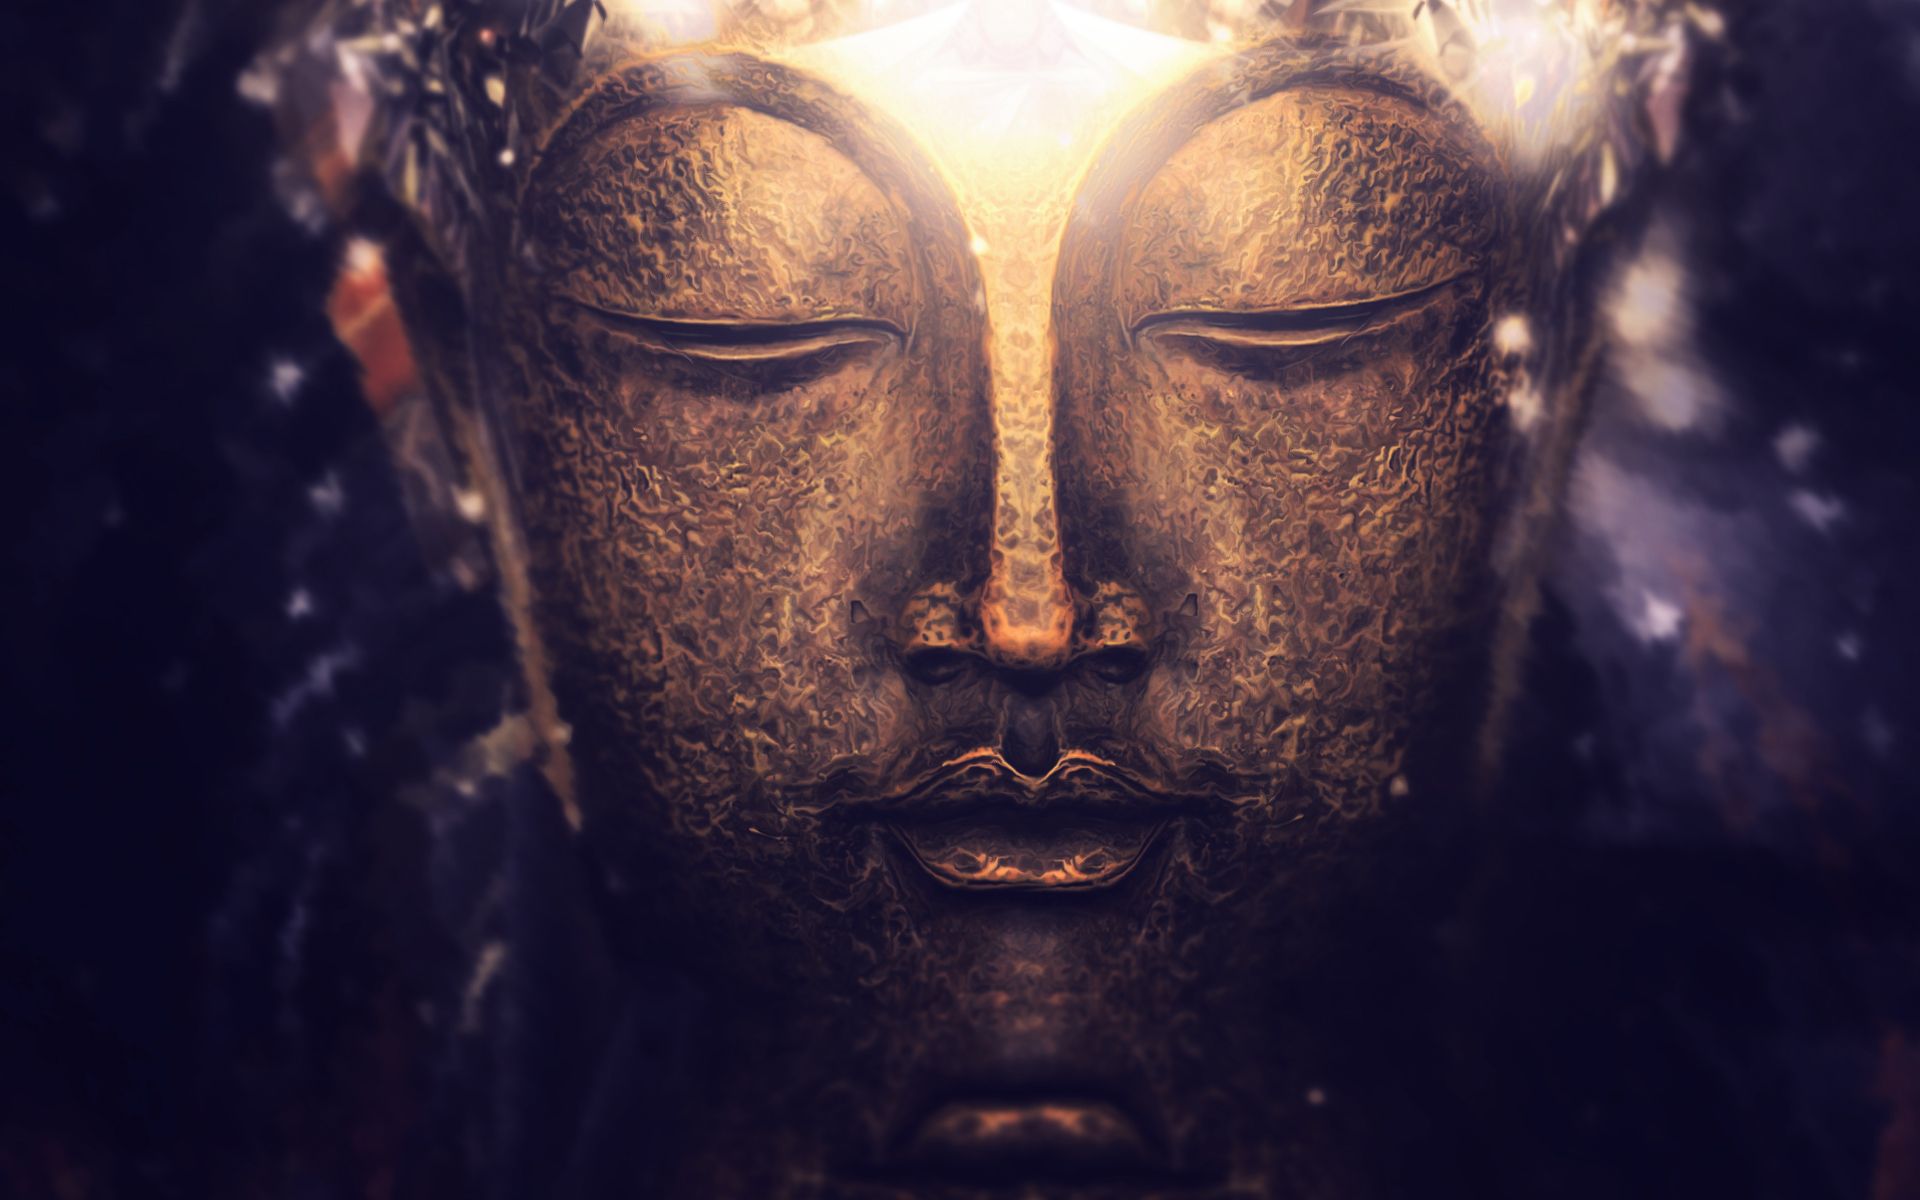  Buddhismus Hintergrundbild 1920x1200. Laden Sie Das Buddhismus Hintergrundbild Für Ihr Handy In Hochwertigen, Hintergrundbildern Buddhismus Kostenlos Herunter